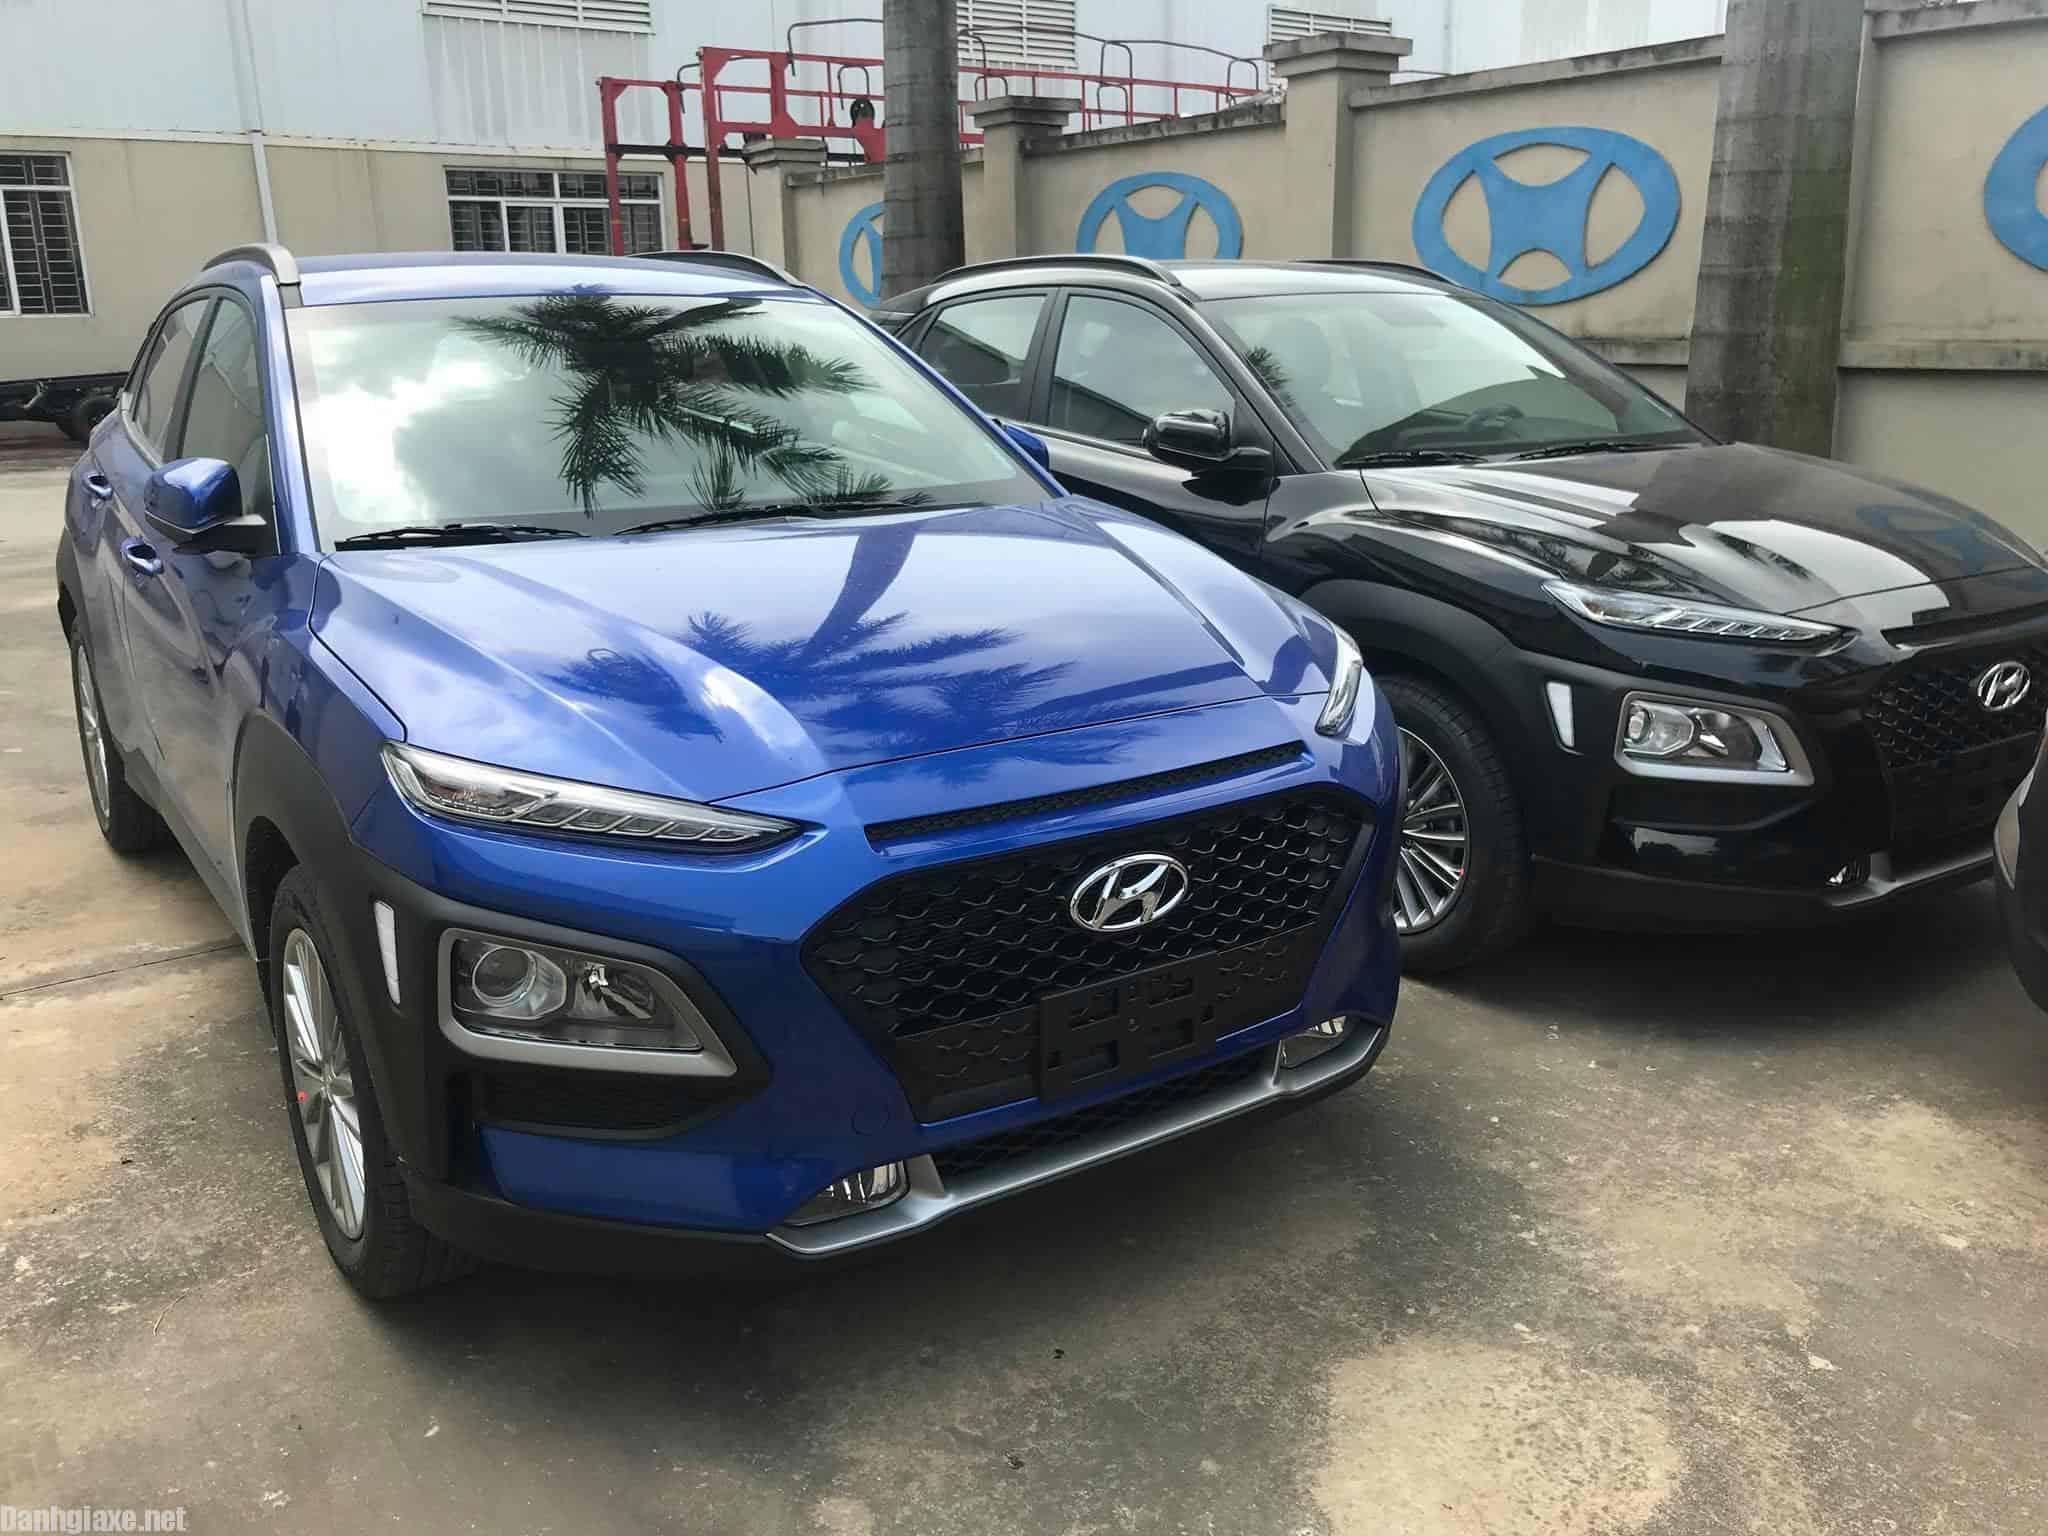 Hyundai Kona, Hyundai Kona 2018, Hyundai Kona 2019, Hyundai, Kona 2019, SUV